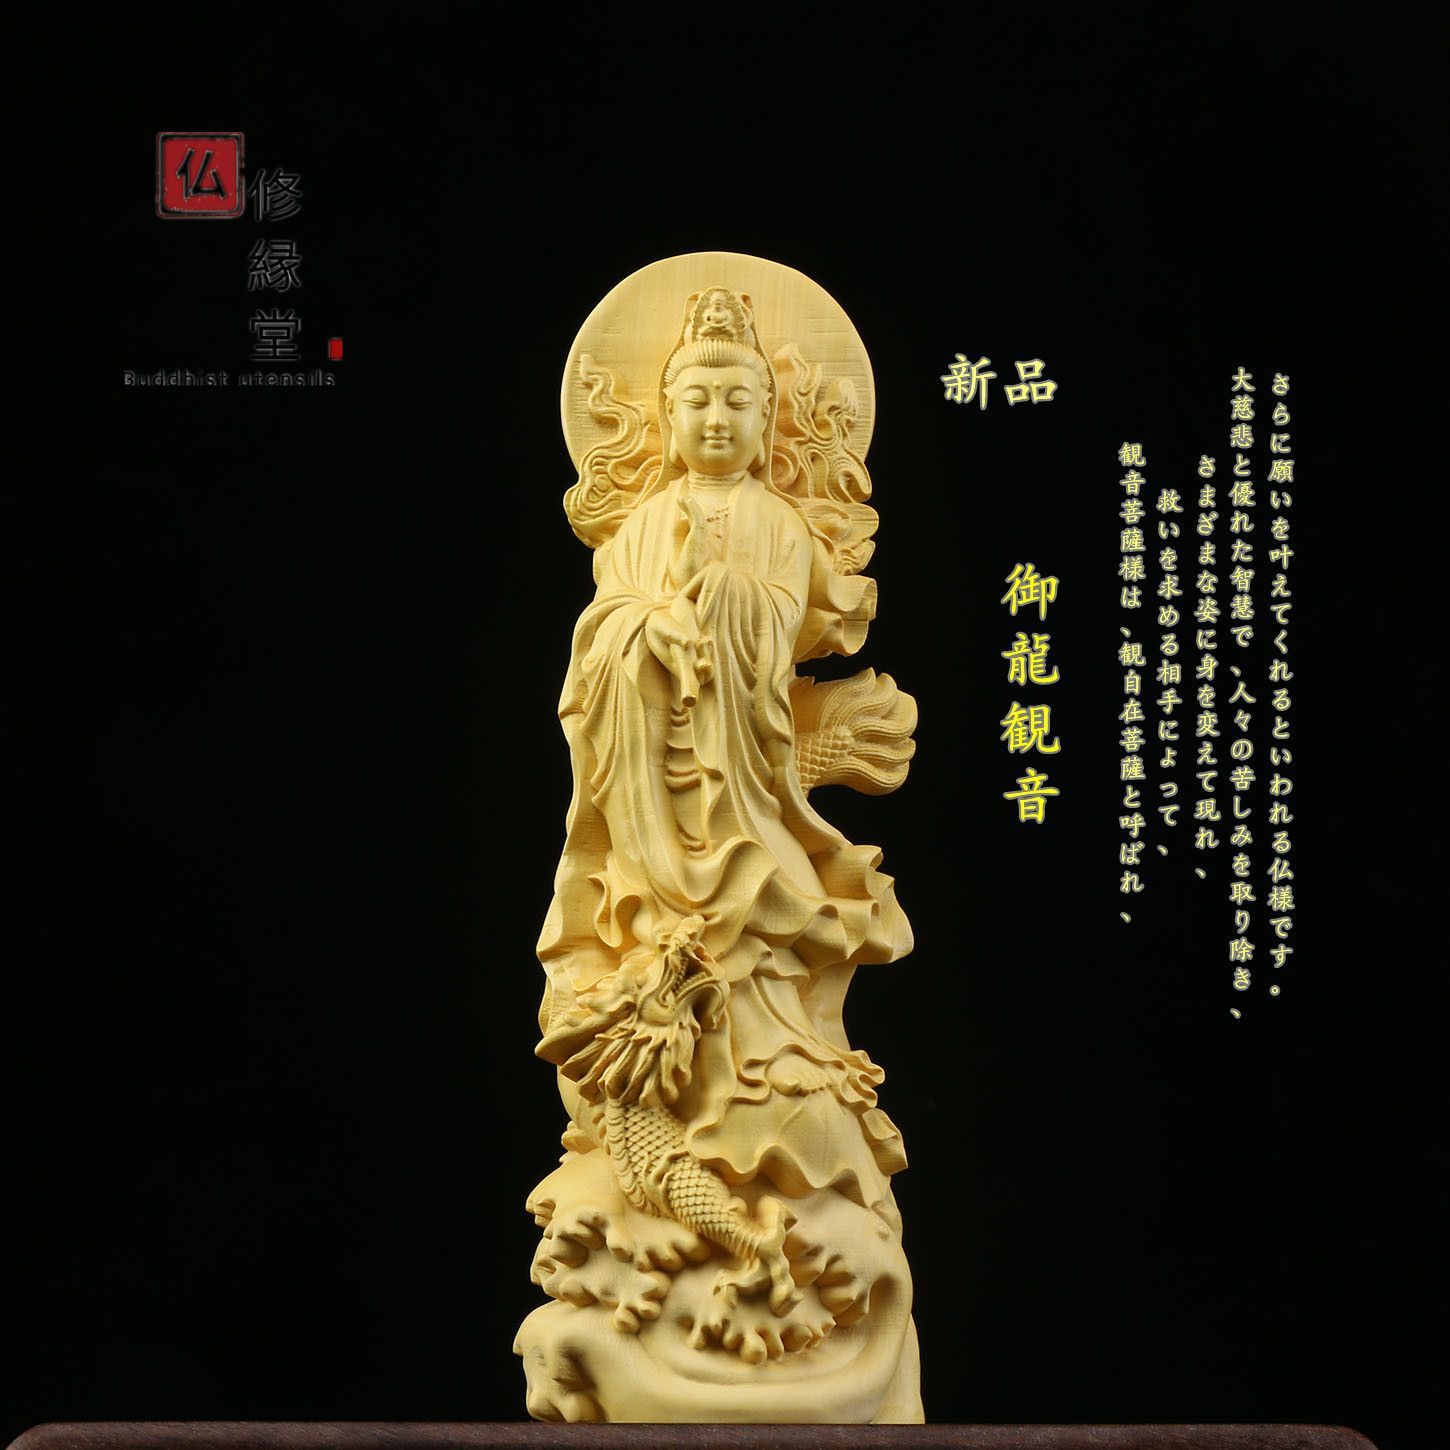 極上品 仏教工芸品 一刀彫 総柘植材 木彫仏像 観音菩薩像 - 美術品